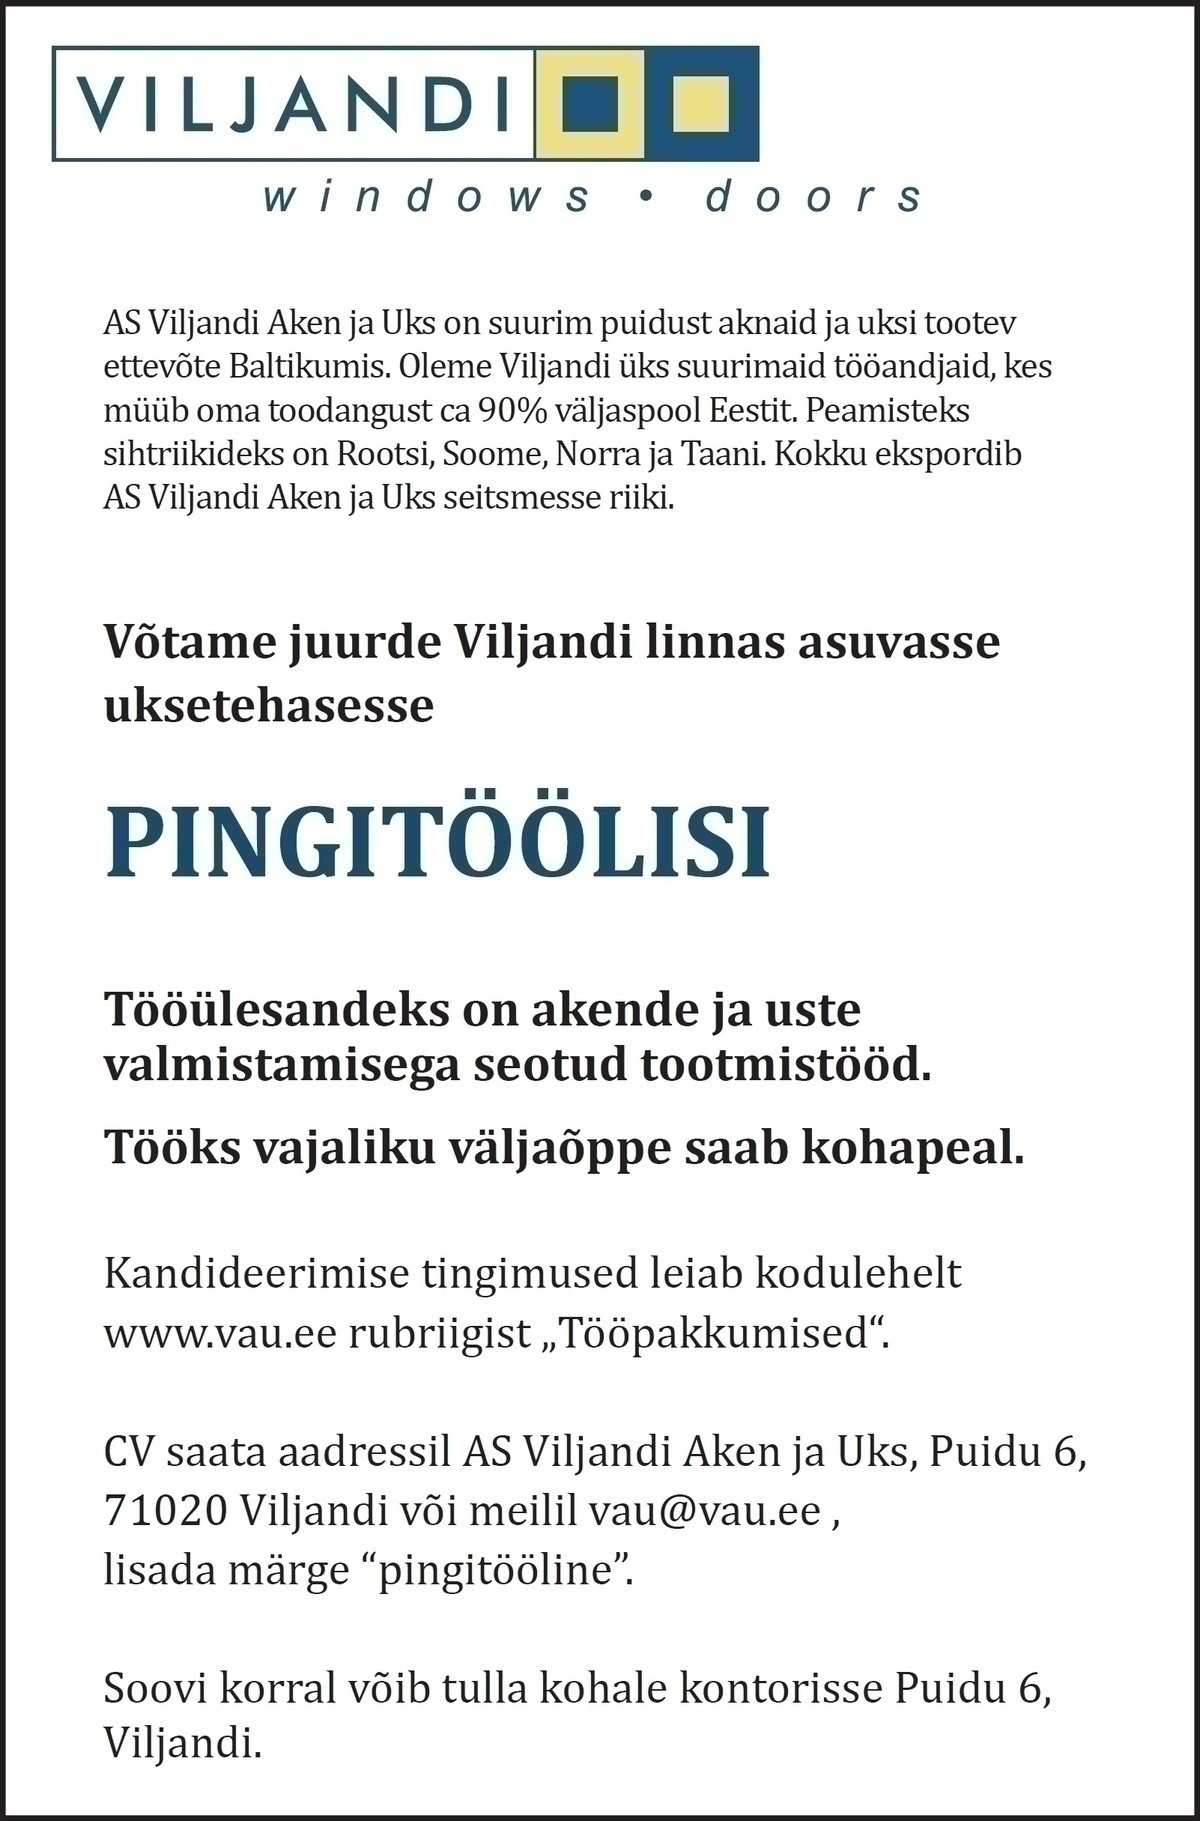 Viljandi Aken ja Uks AS Pingitööline/seadmeoperaator (Viljandi Aken ja Uks AS)